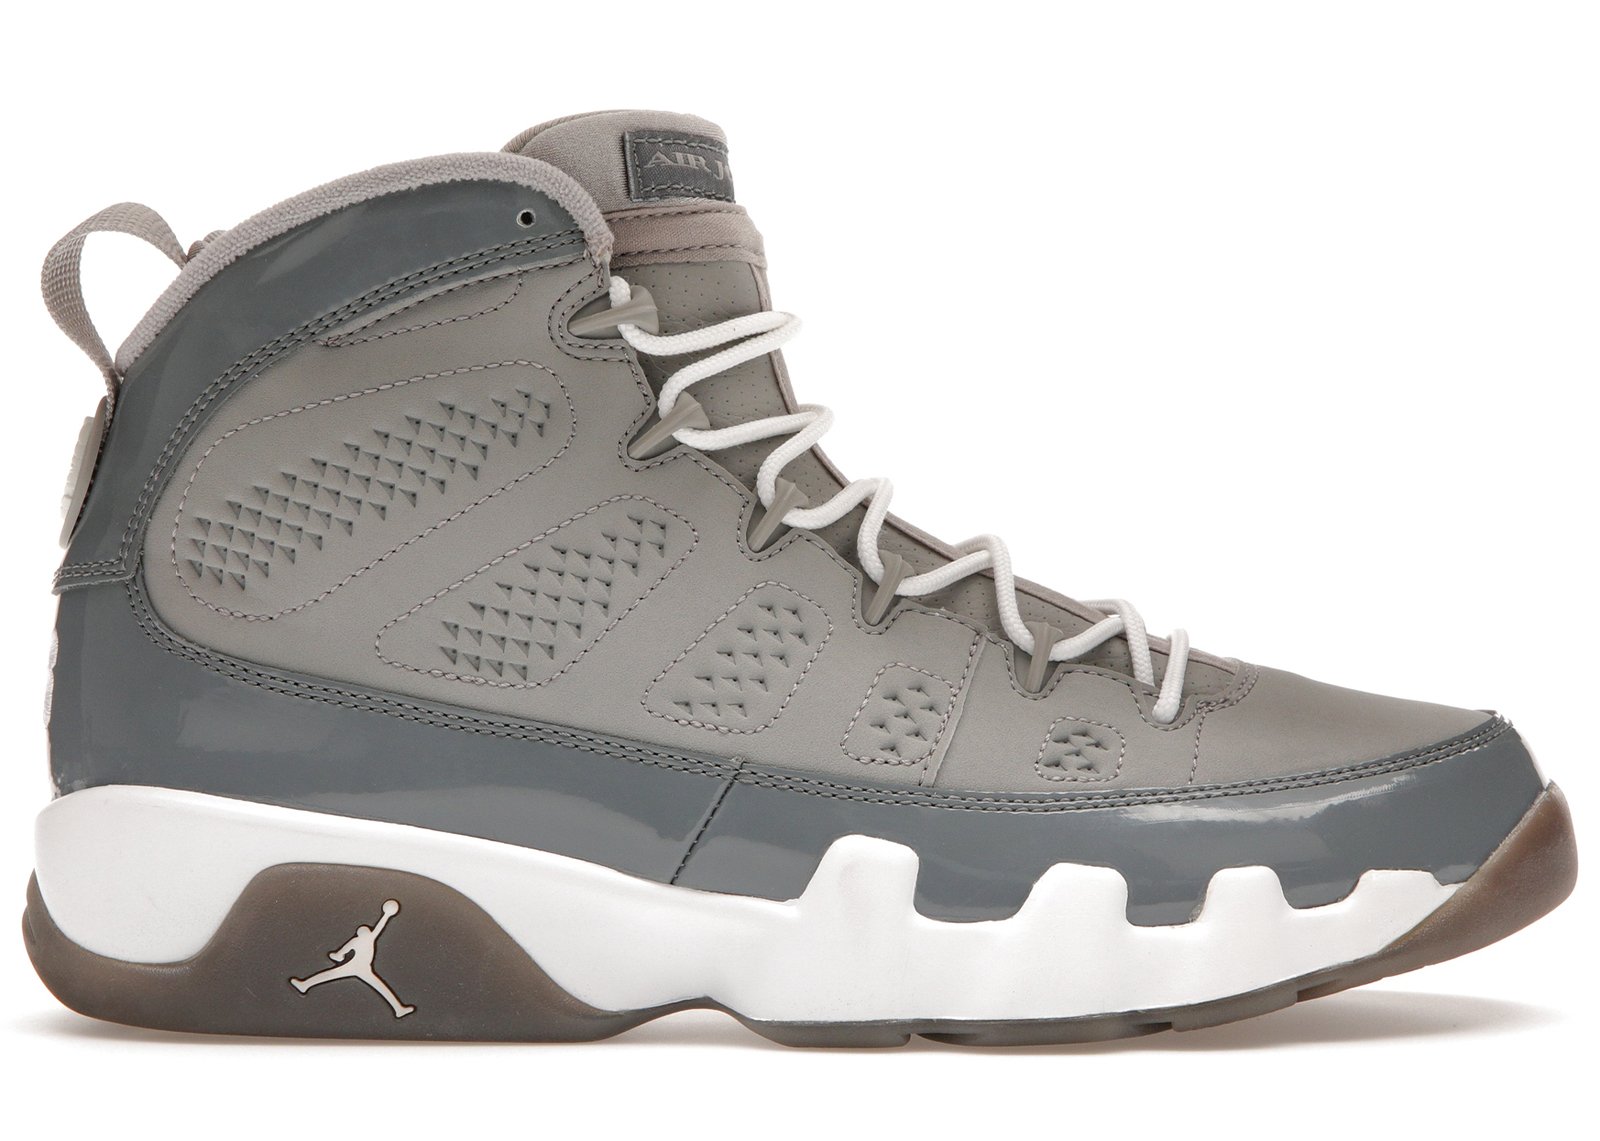 Jordan 9 Retro Cool Grey (2012) sneakers